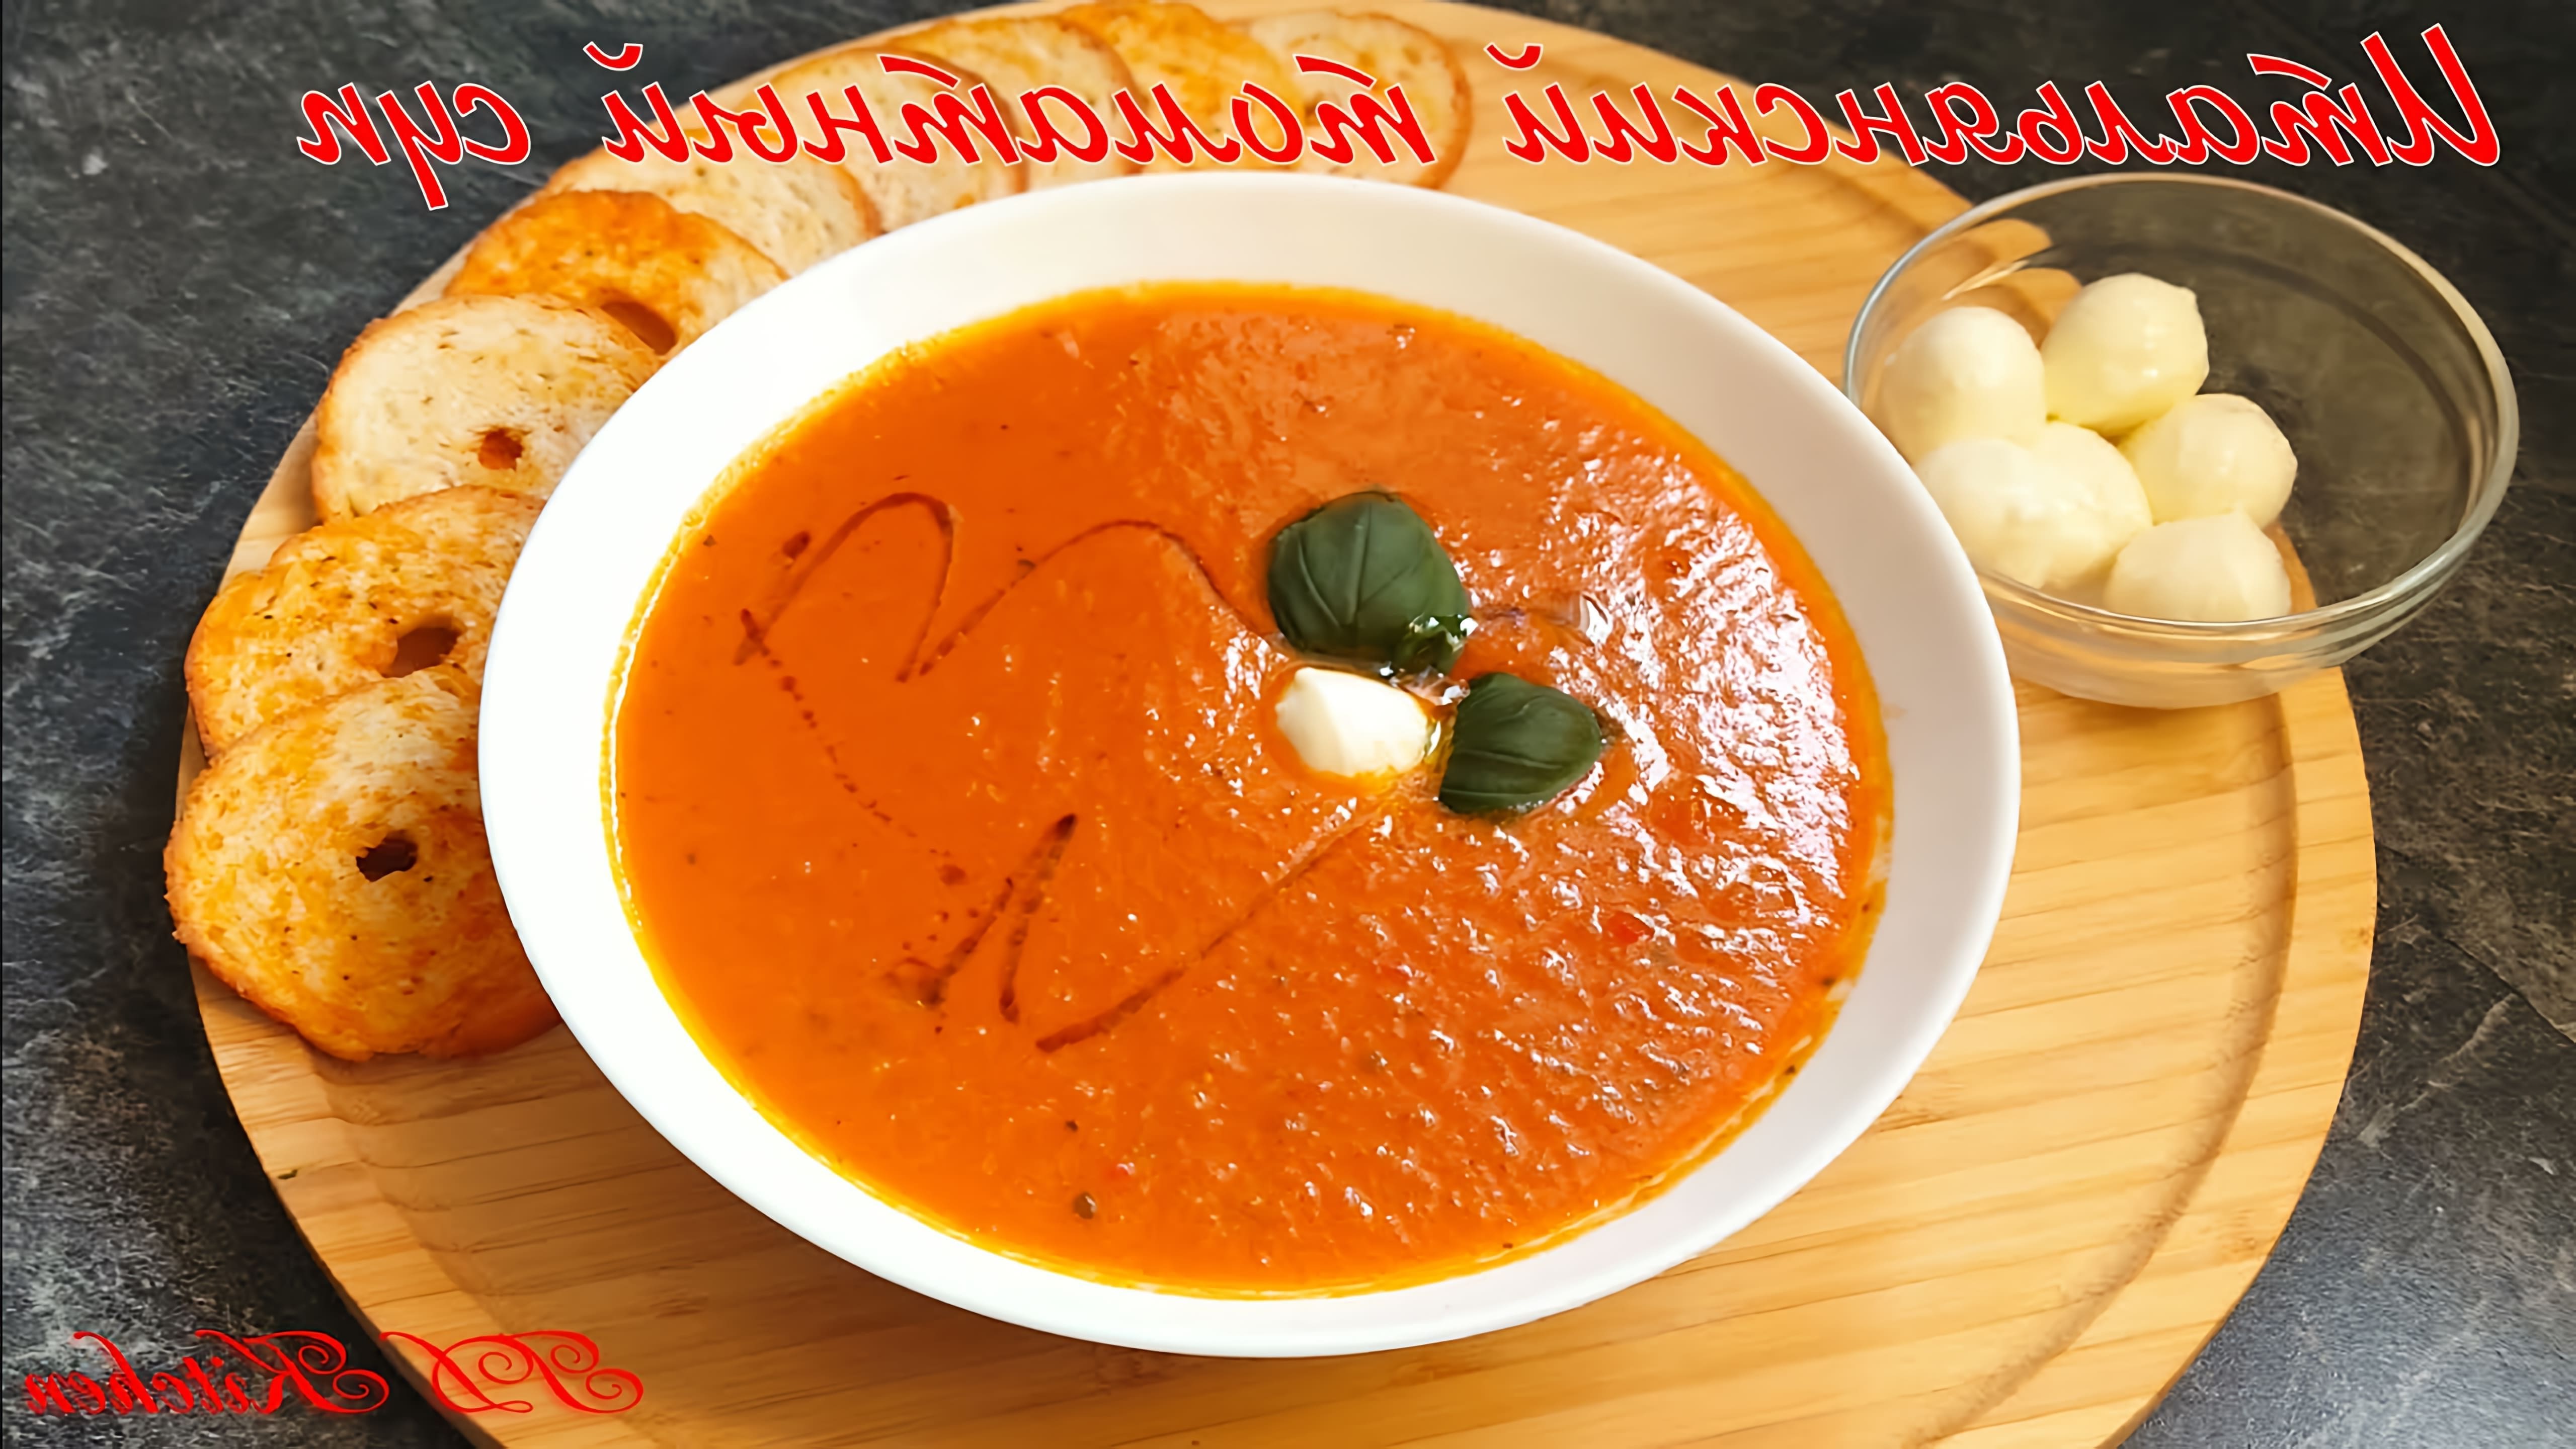 В этом видео демонстрируется рецепт итальянского томатного супа из свежих помидоров